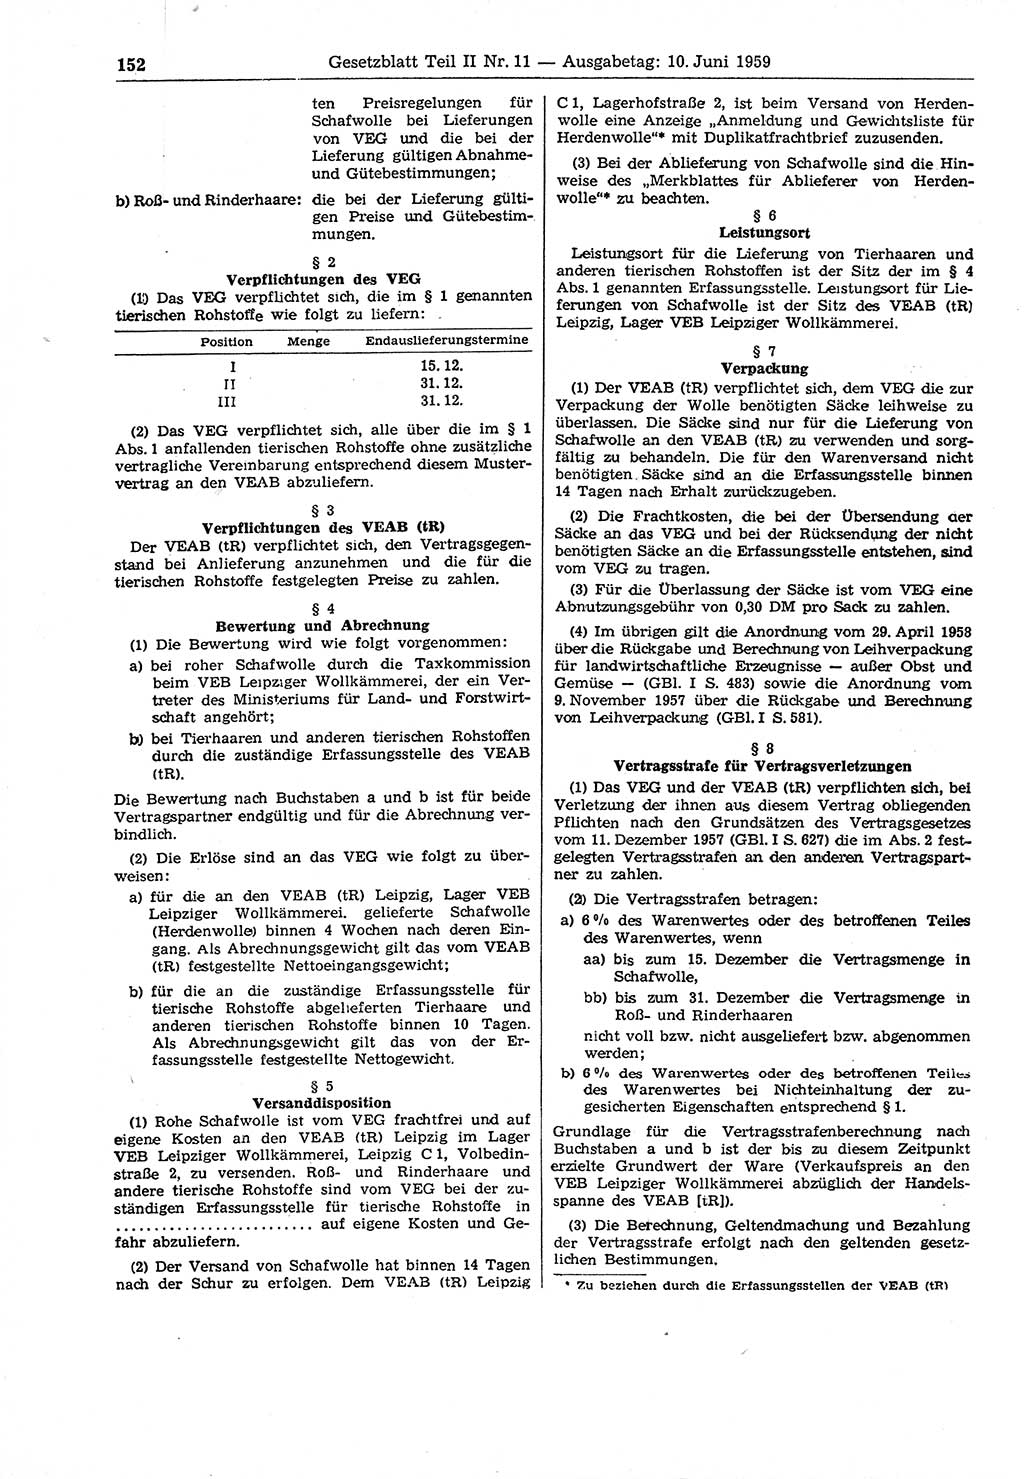 Gesetzblatt (GBl.) der Deutschen Demokratischen Republik (DDR) Teil ⅠⅠ 1959, Seite 152 (GBl. DDR ⅠⅠ 1959, S. 152)